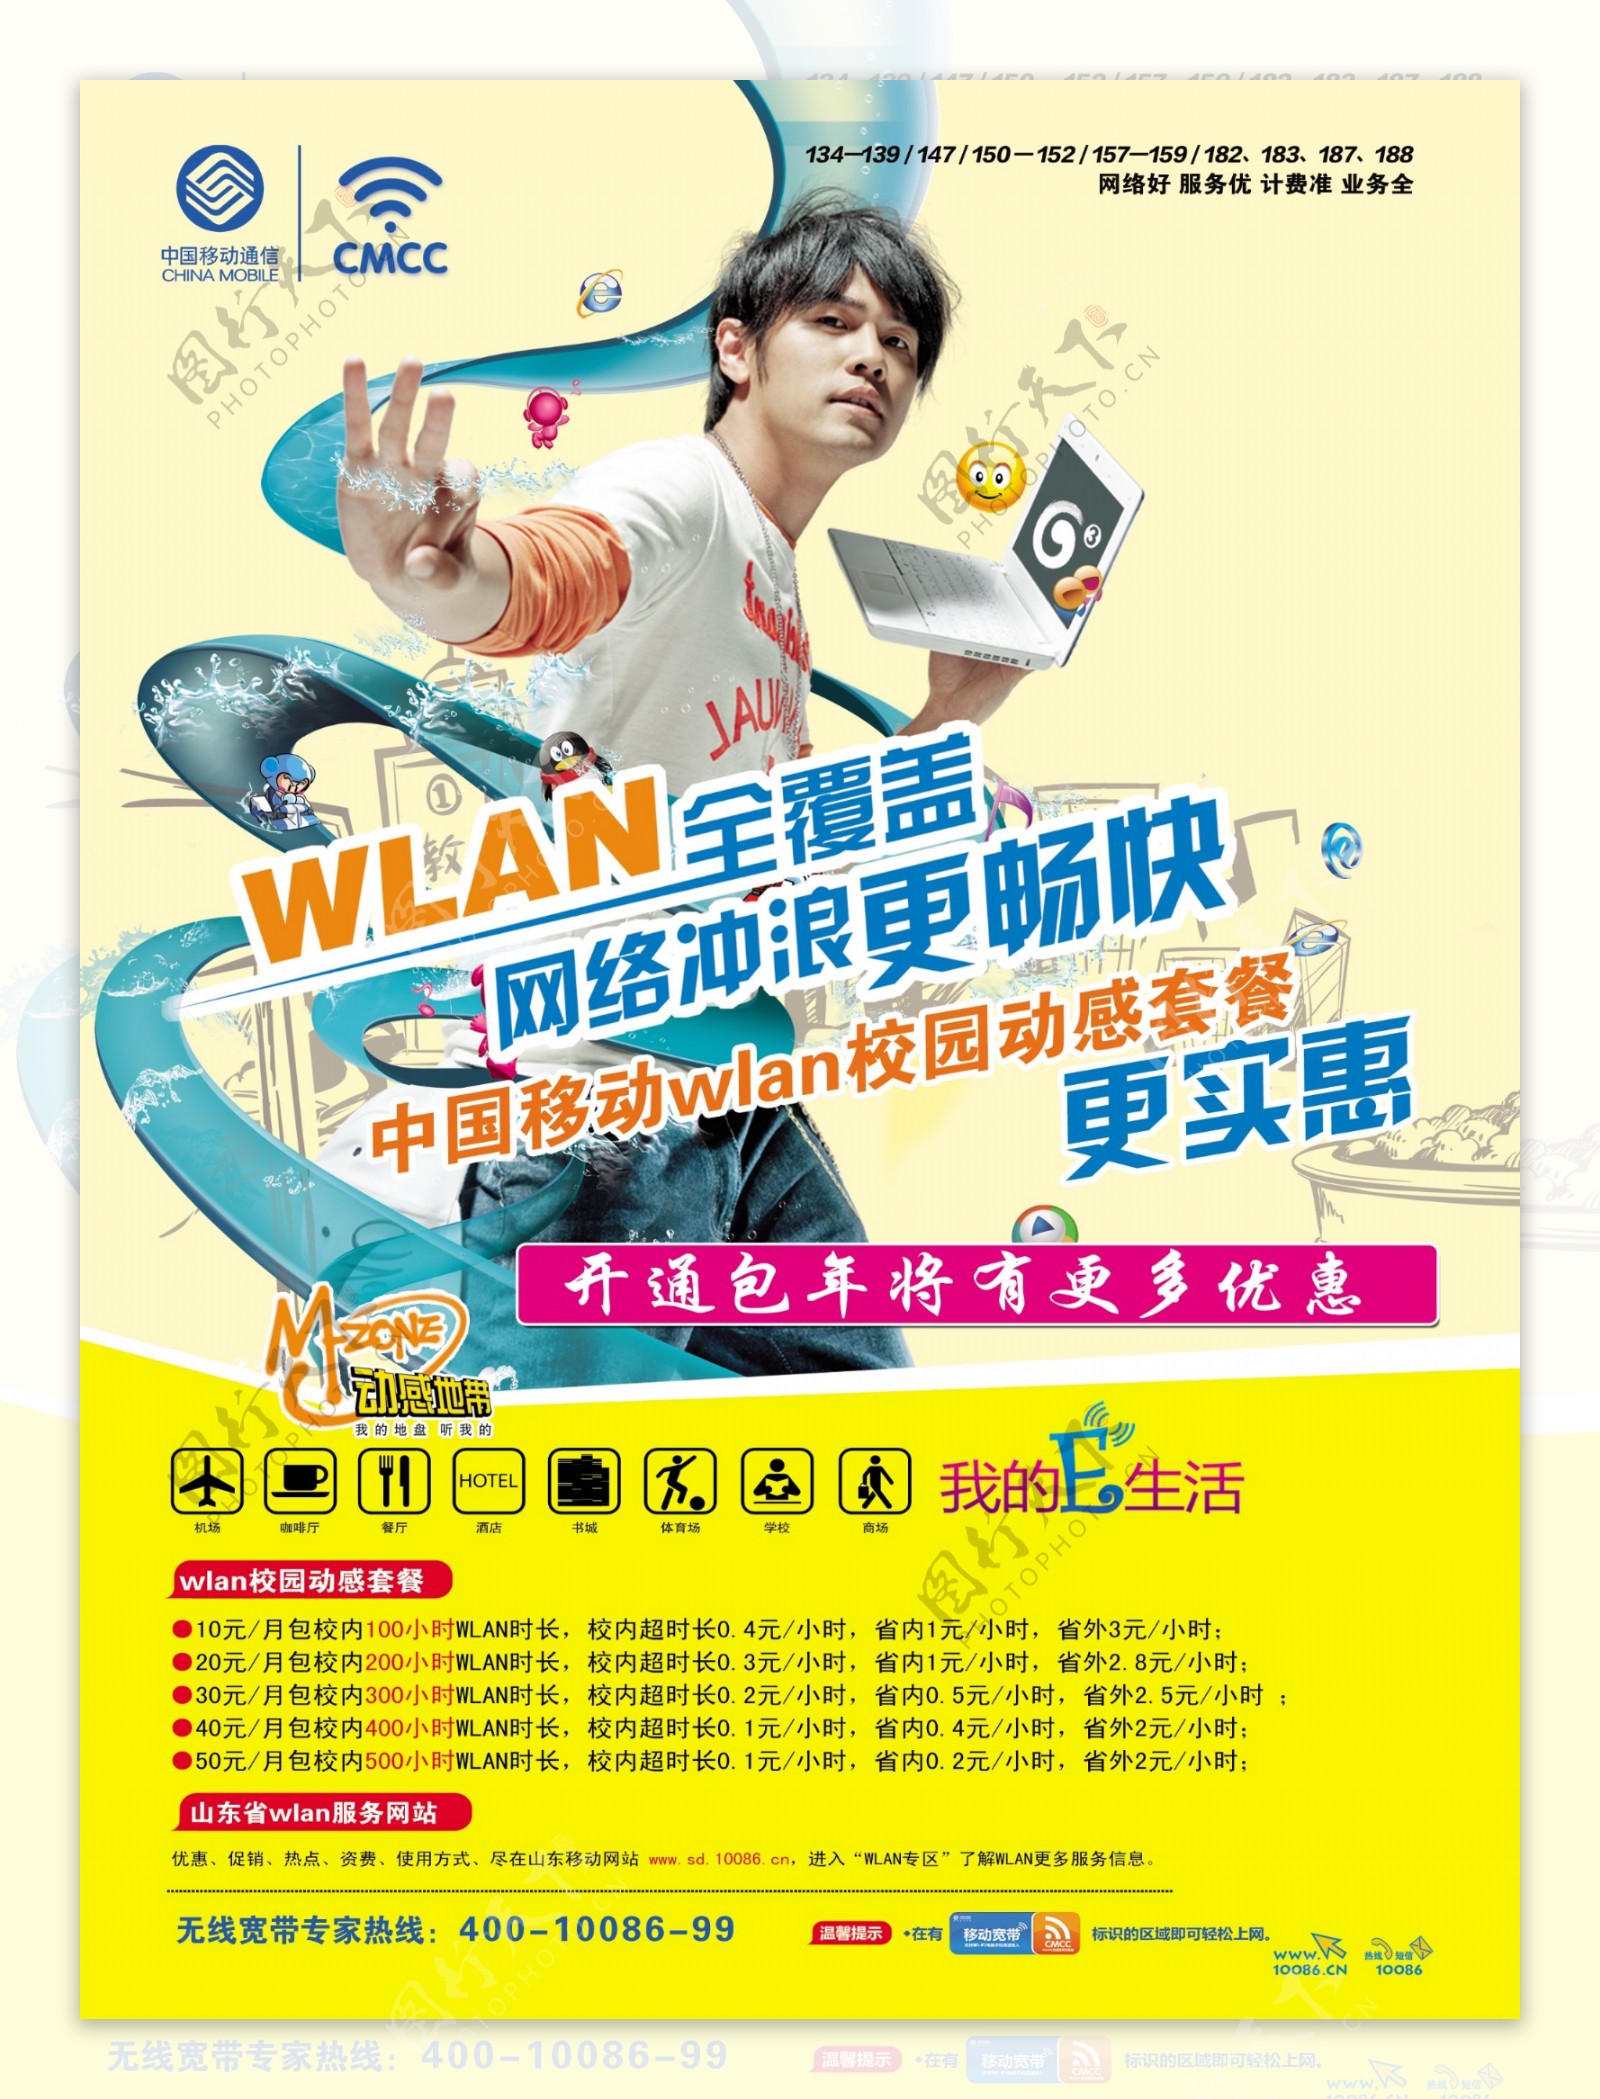 中国移动wlan海报宣传图片